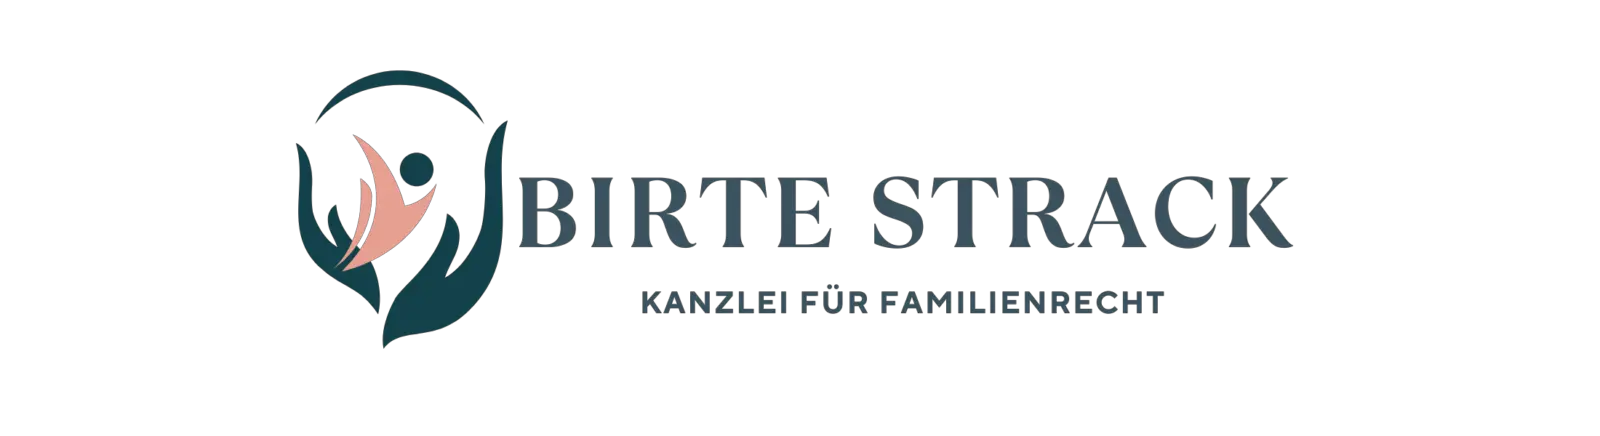 In der Kanzlei für Familienrecht von Rechtsanwältin Birte Strack gibt es juristische Hilfe rund um den Unterhalt bei Trennung und Scheidung mit oder ohne Kind.